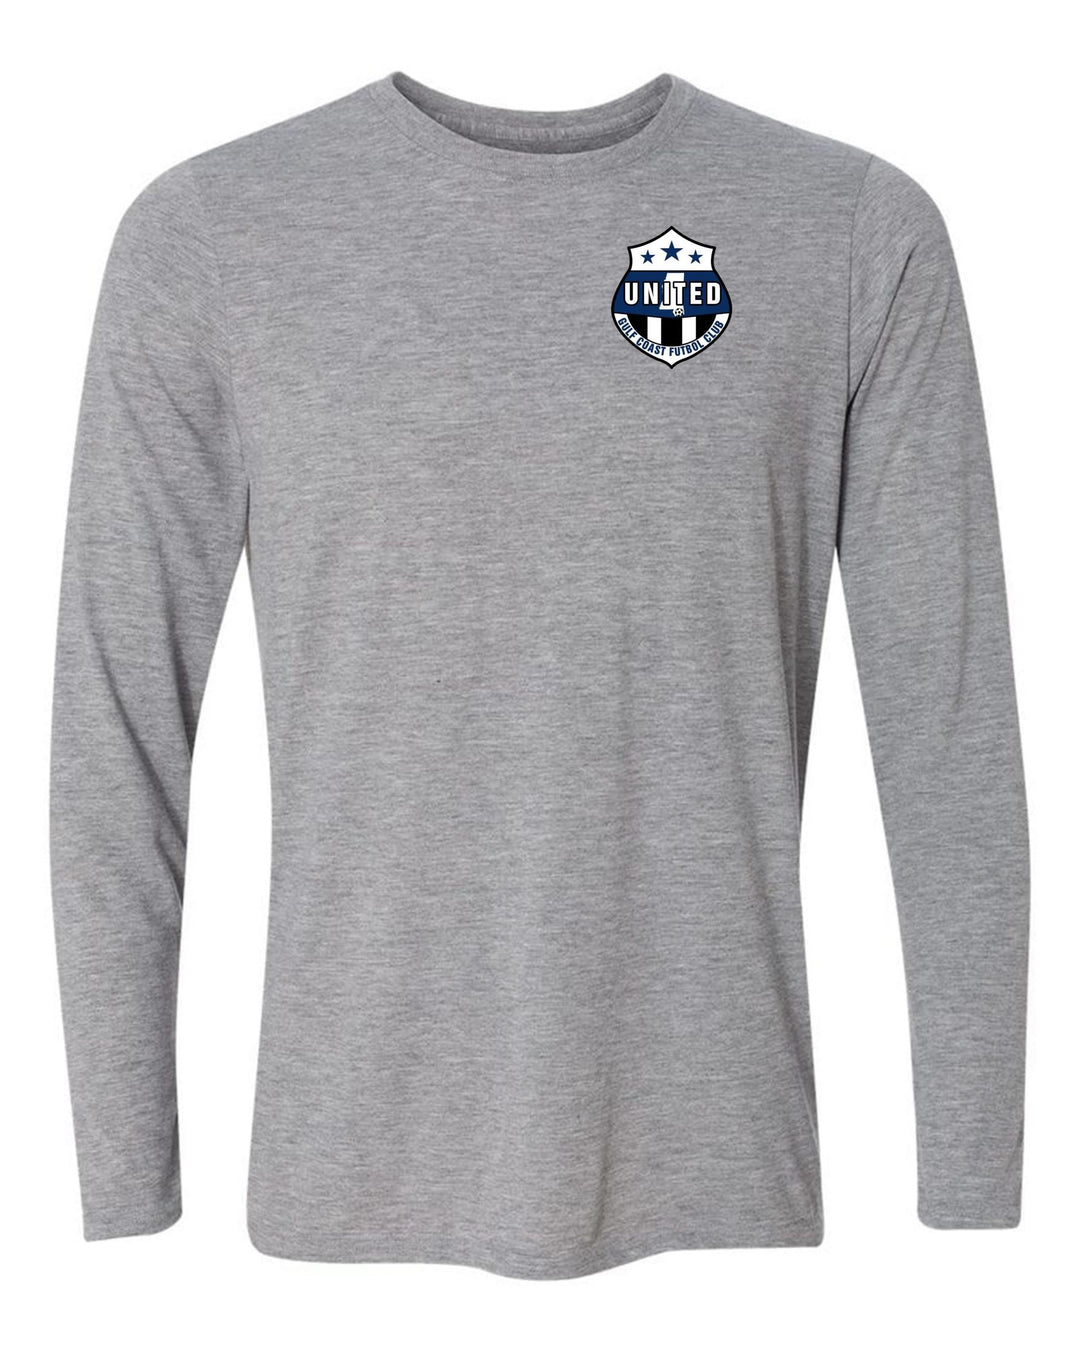 Gulf Coast United LS T-shirt - Royal or Sport Grey Gulf Coast United Spiritwear SPORT GREY YOUTH LARGE - Third Coast Soccer